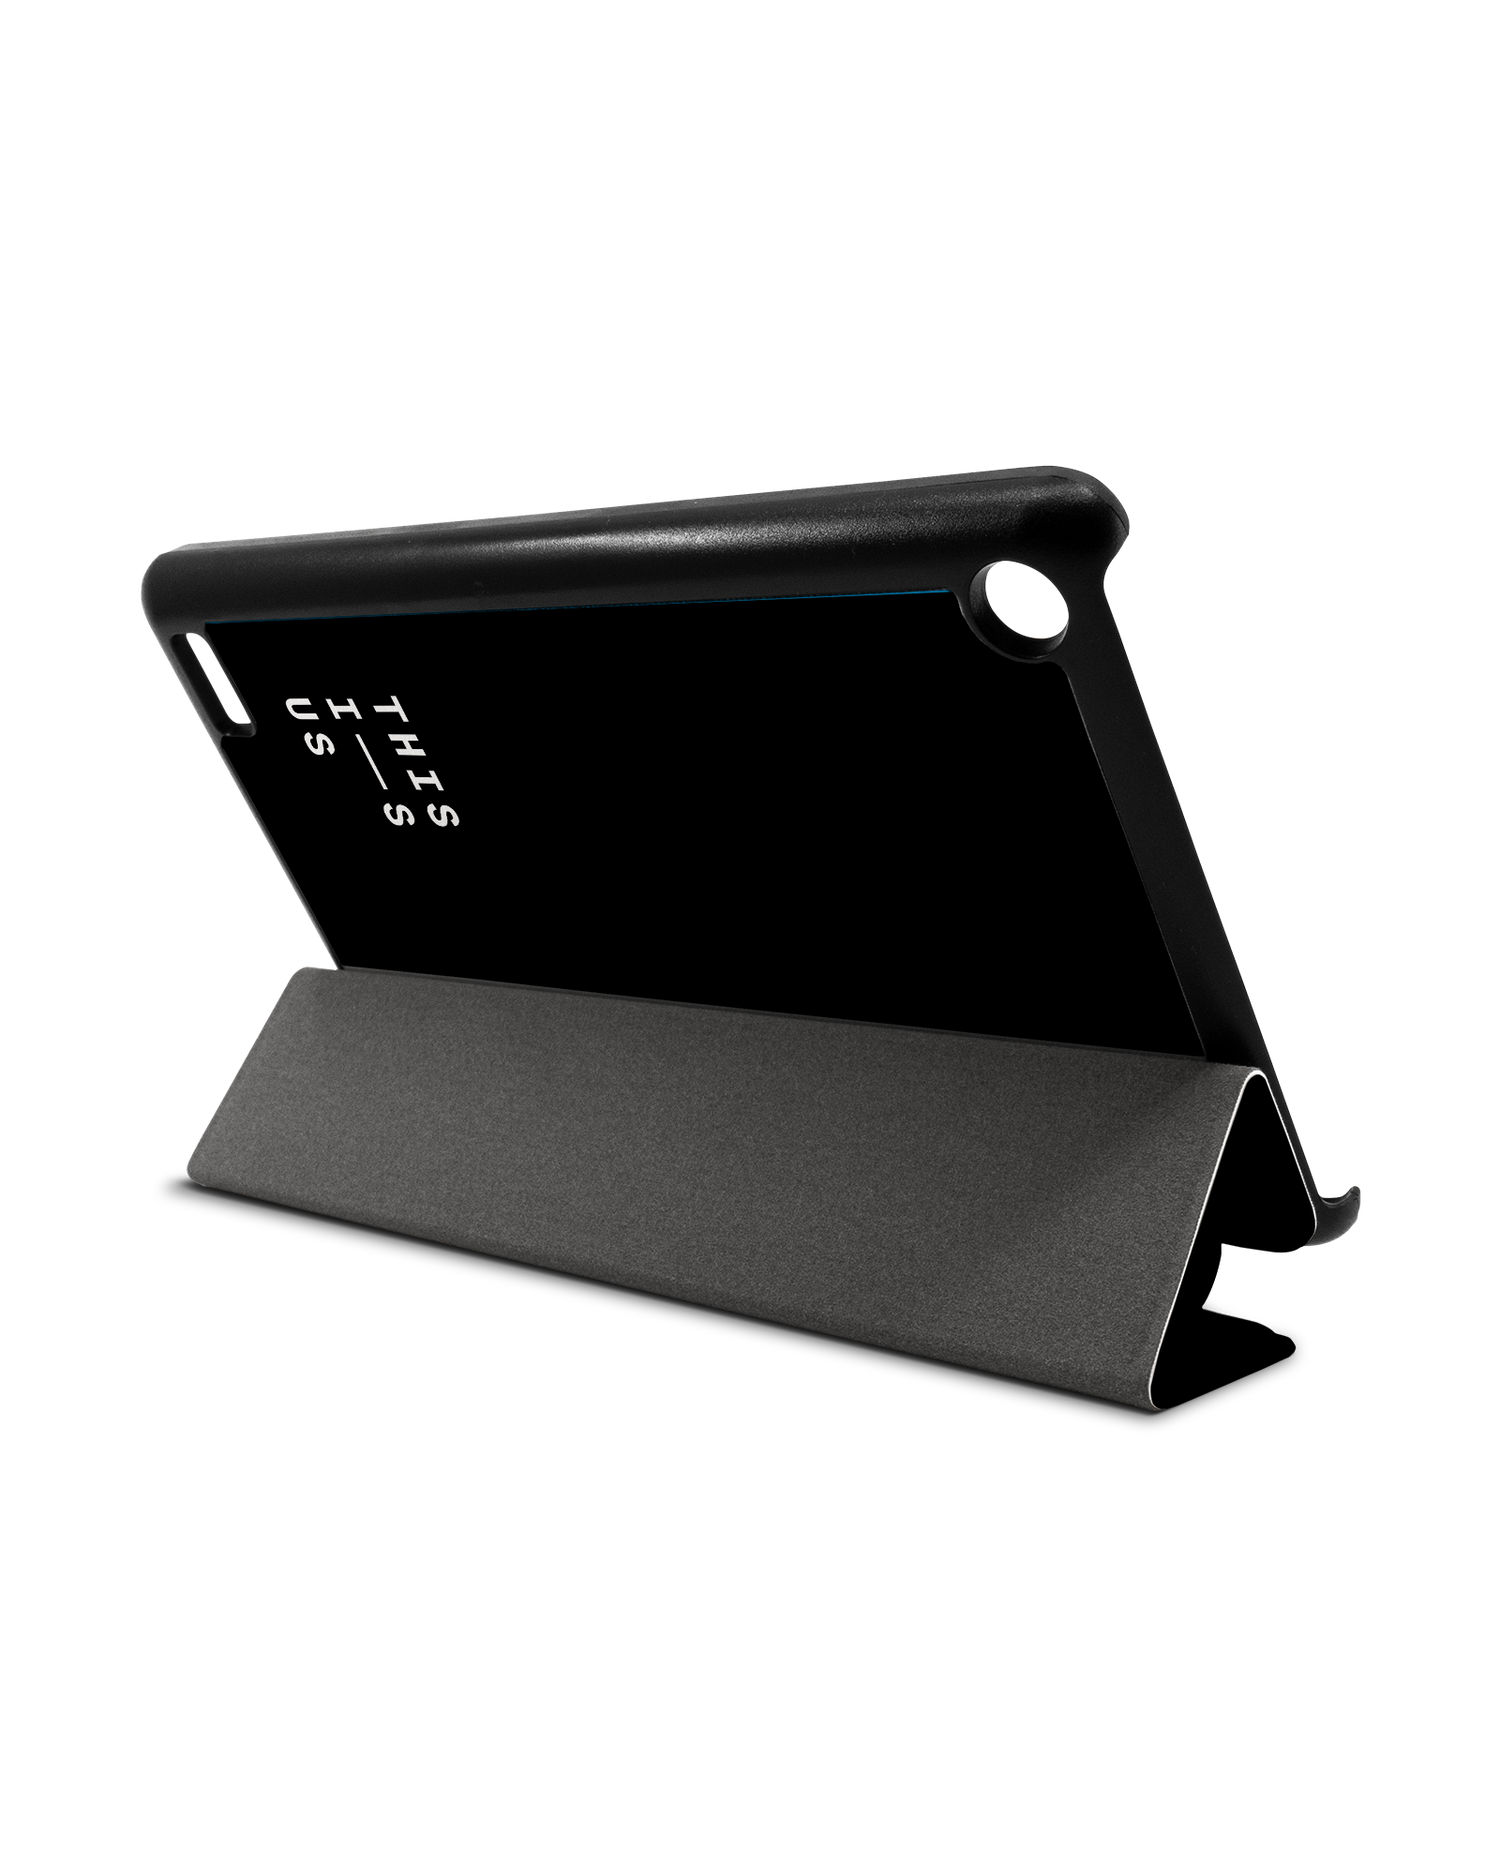 This Is Us Tablet Smart Case für Amazon Fire 7: Aufgestellt im Querformat